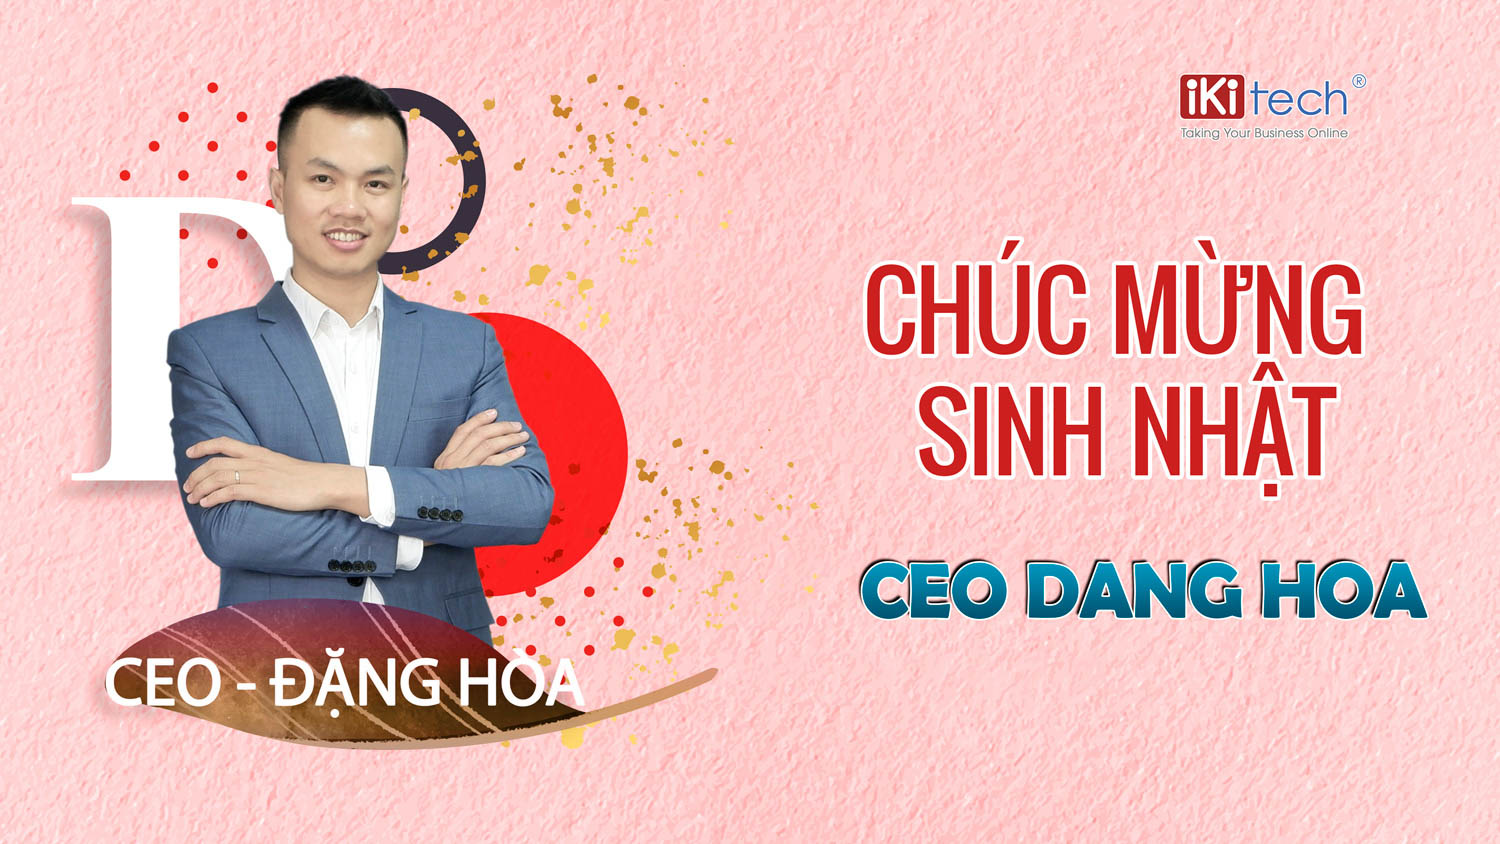 Chúc mừng sinh nhật CEO Đặng Hòa – Vị thuyền trưởng của Ikitech